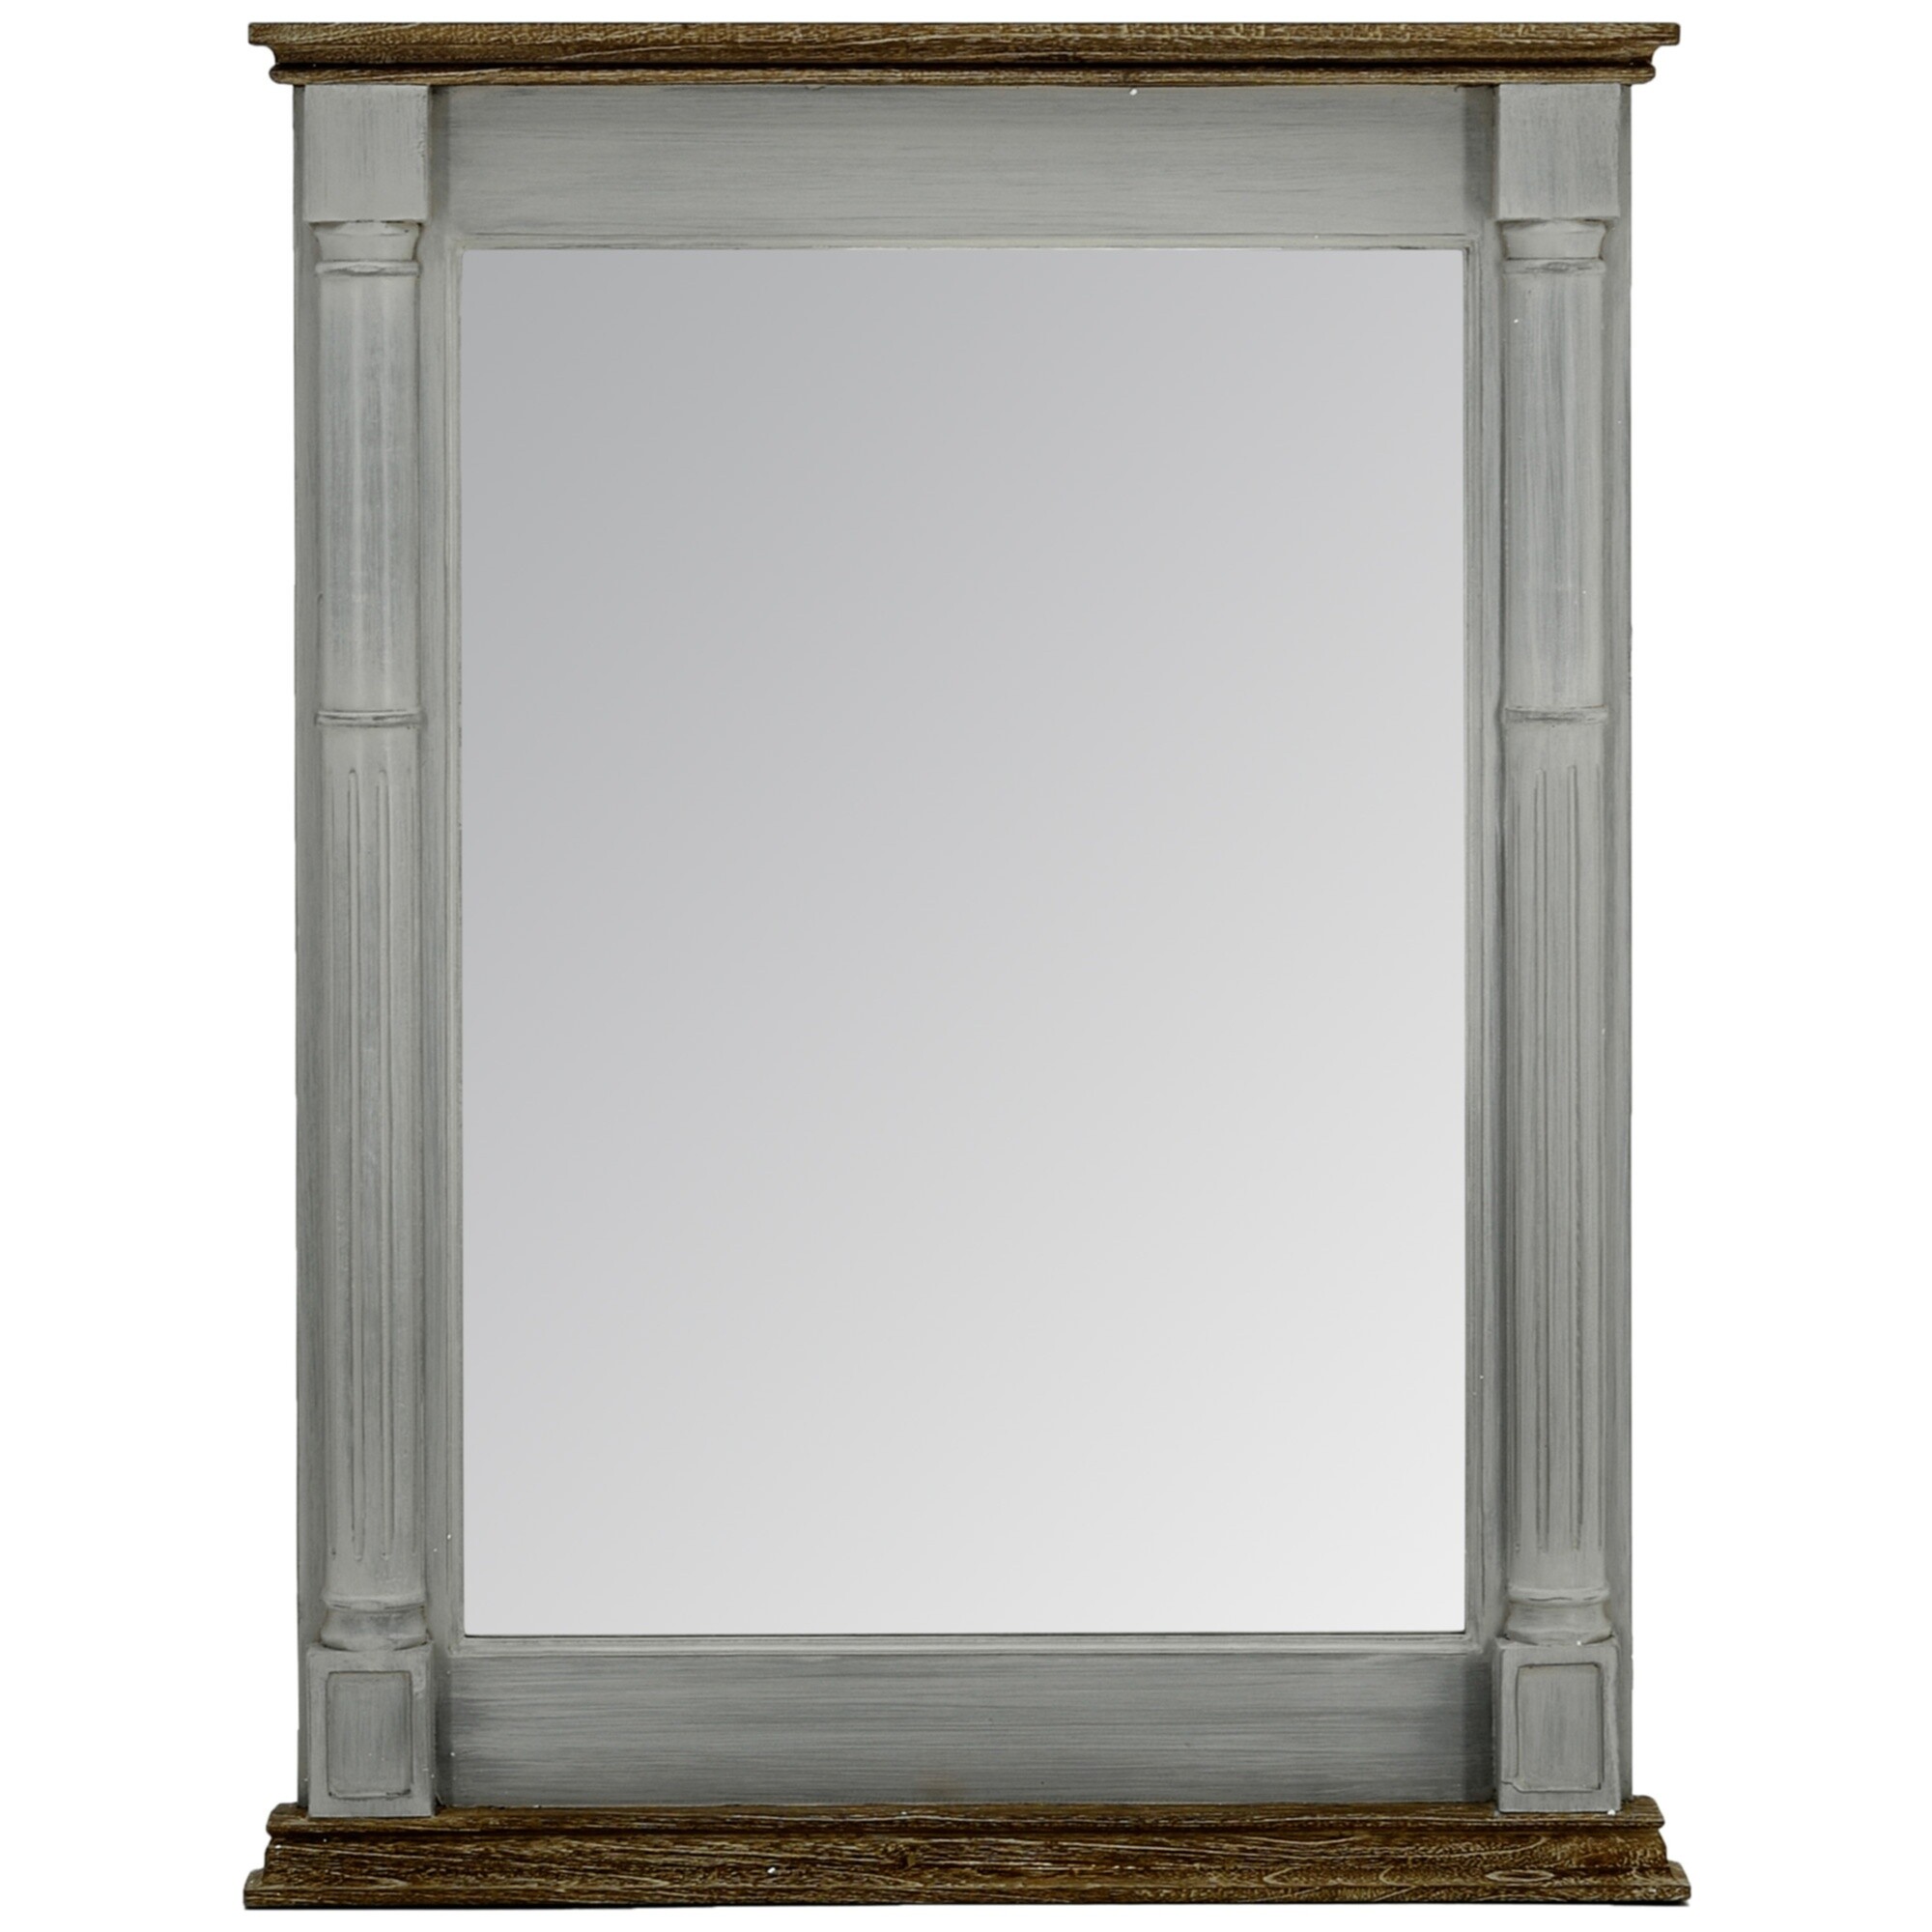 Зеркало-окно настенное в деревянной раме серое 110885